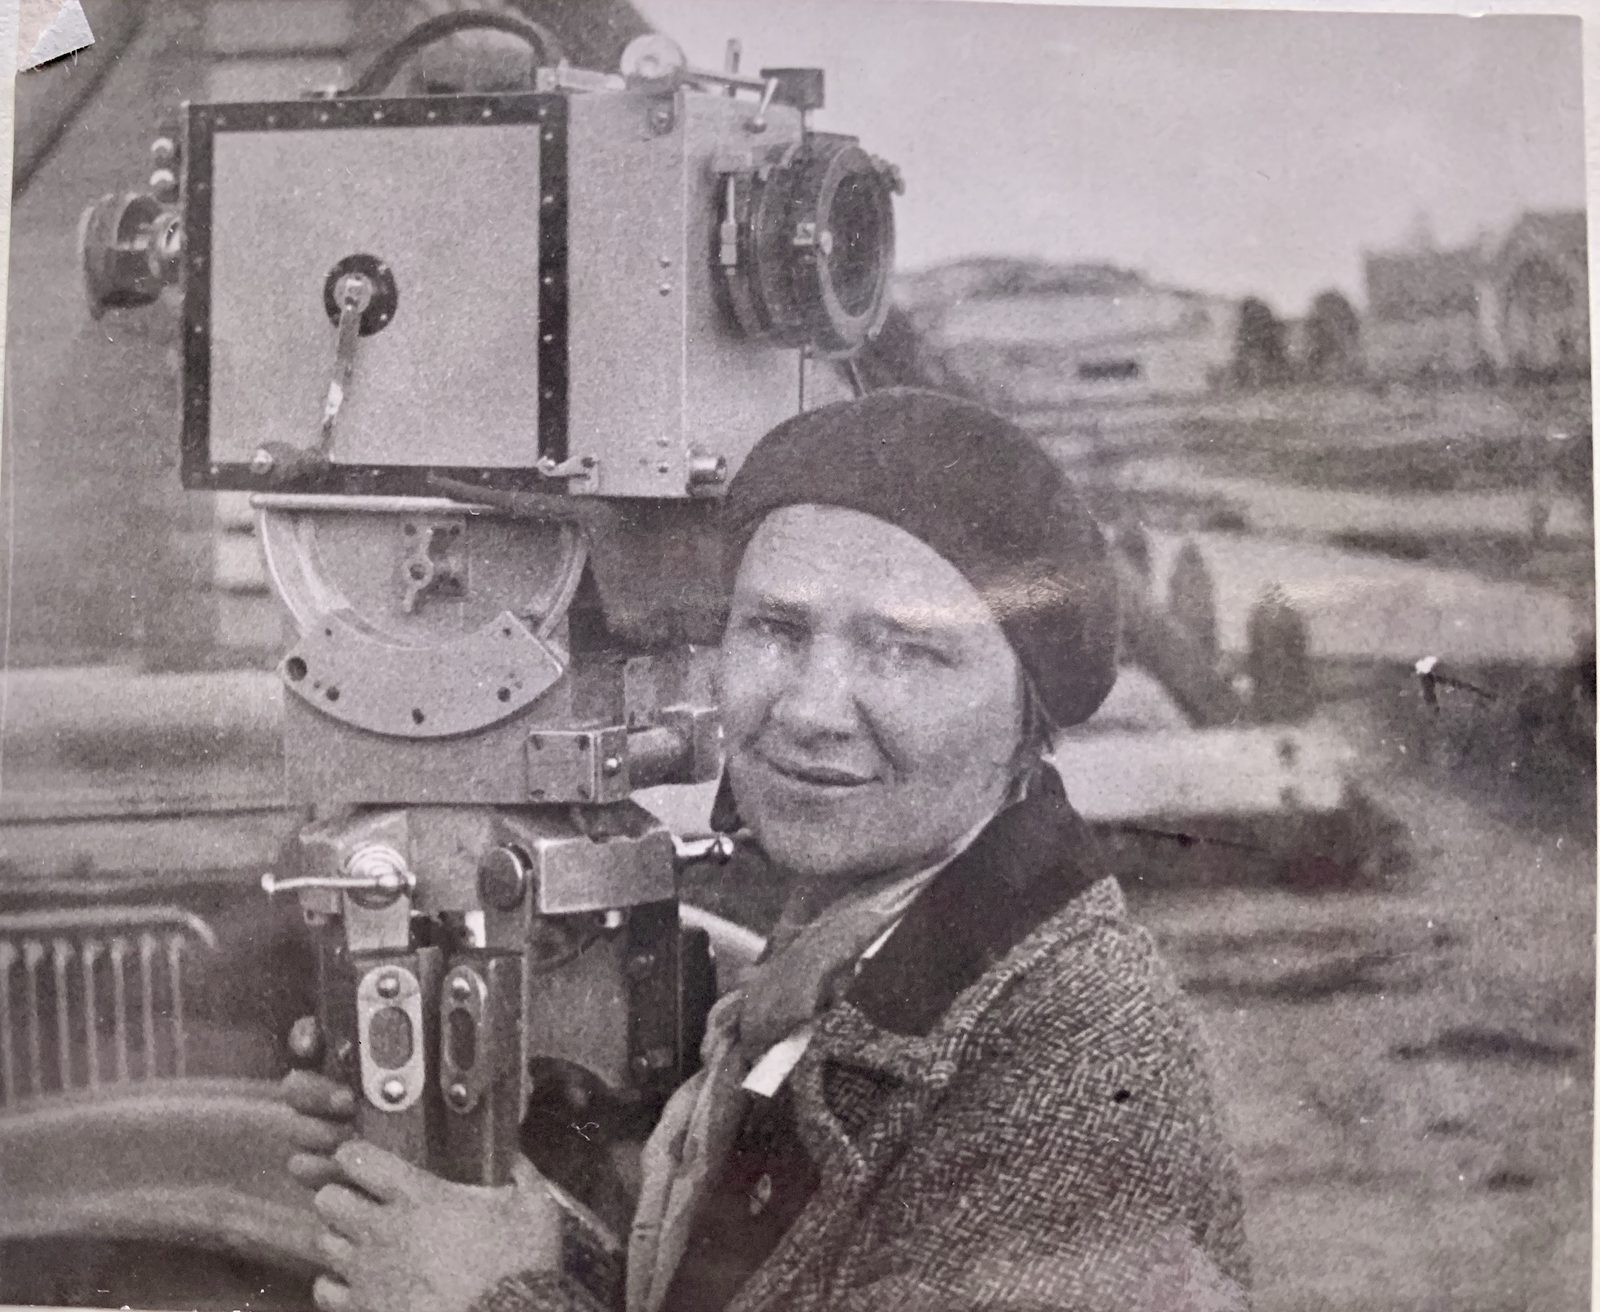 Седьмая серия документального проекта «Как снимали войну» посвящена первой женщине-кинооператору Марии Суховой